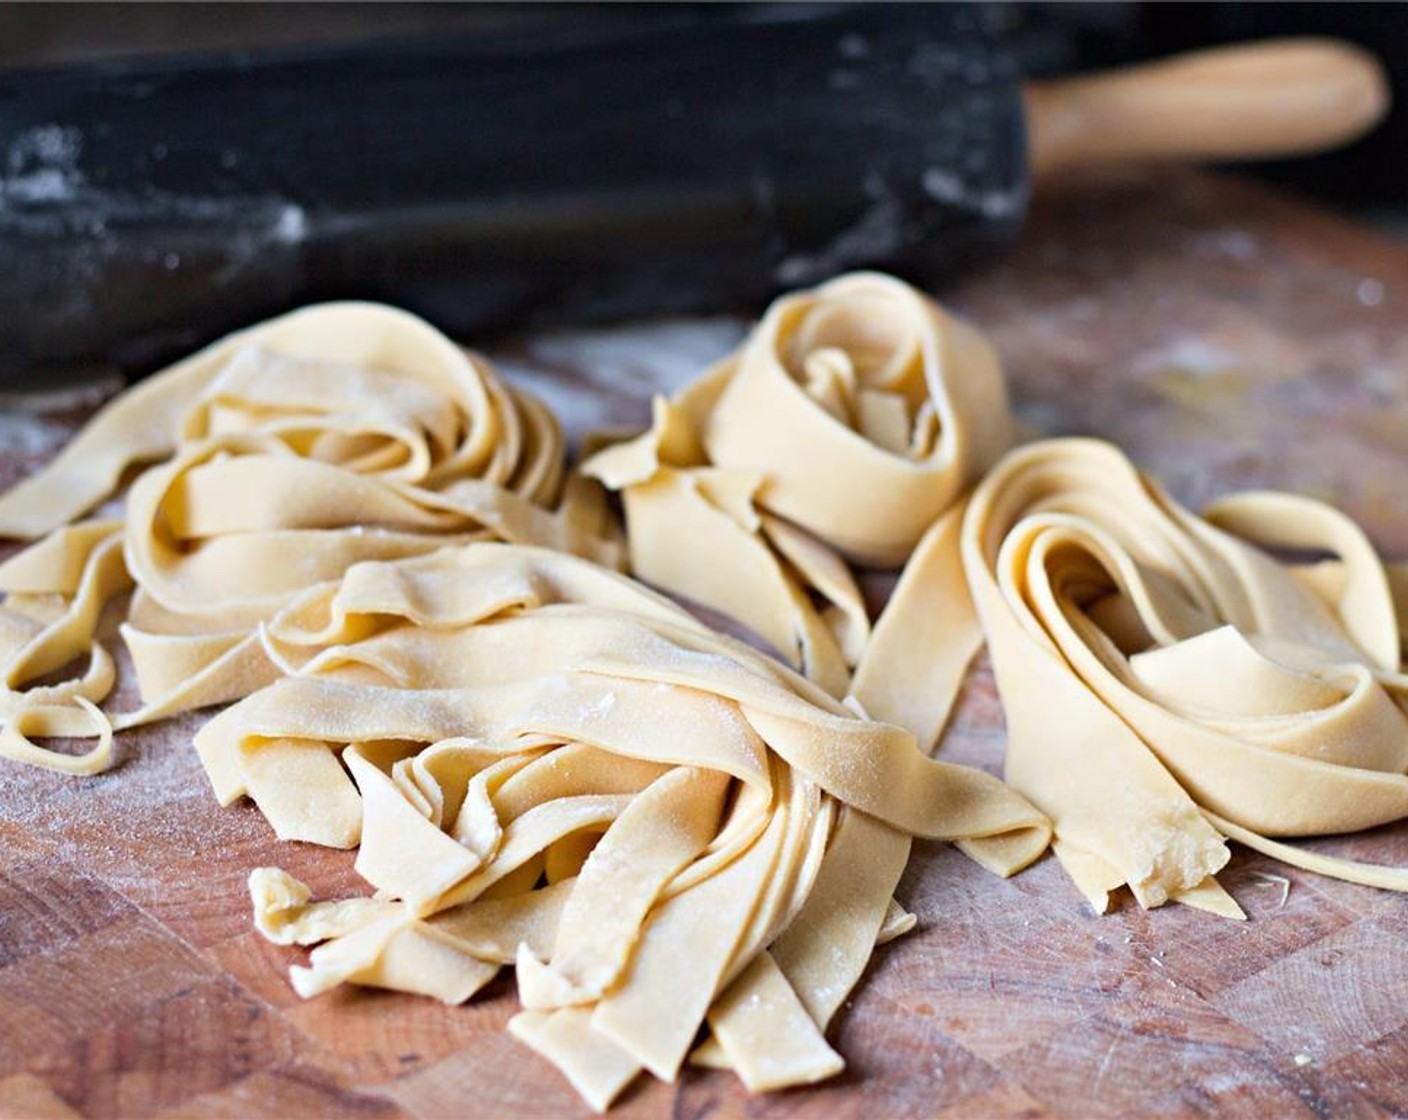 Schritt 7 In stark gesalzenem Wasser kochen. Frische Pasta benötigt nur 30 Sekunden, wenn sie dünn genug ist. Sie ist fertig, wenn die Pasta die Farbe ändert und im Topf aufsteigt.